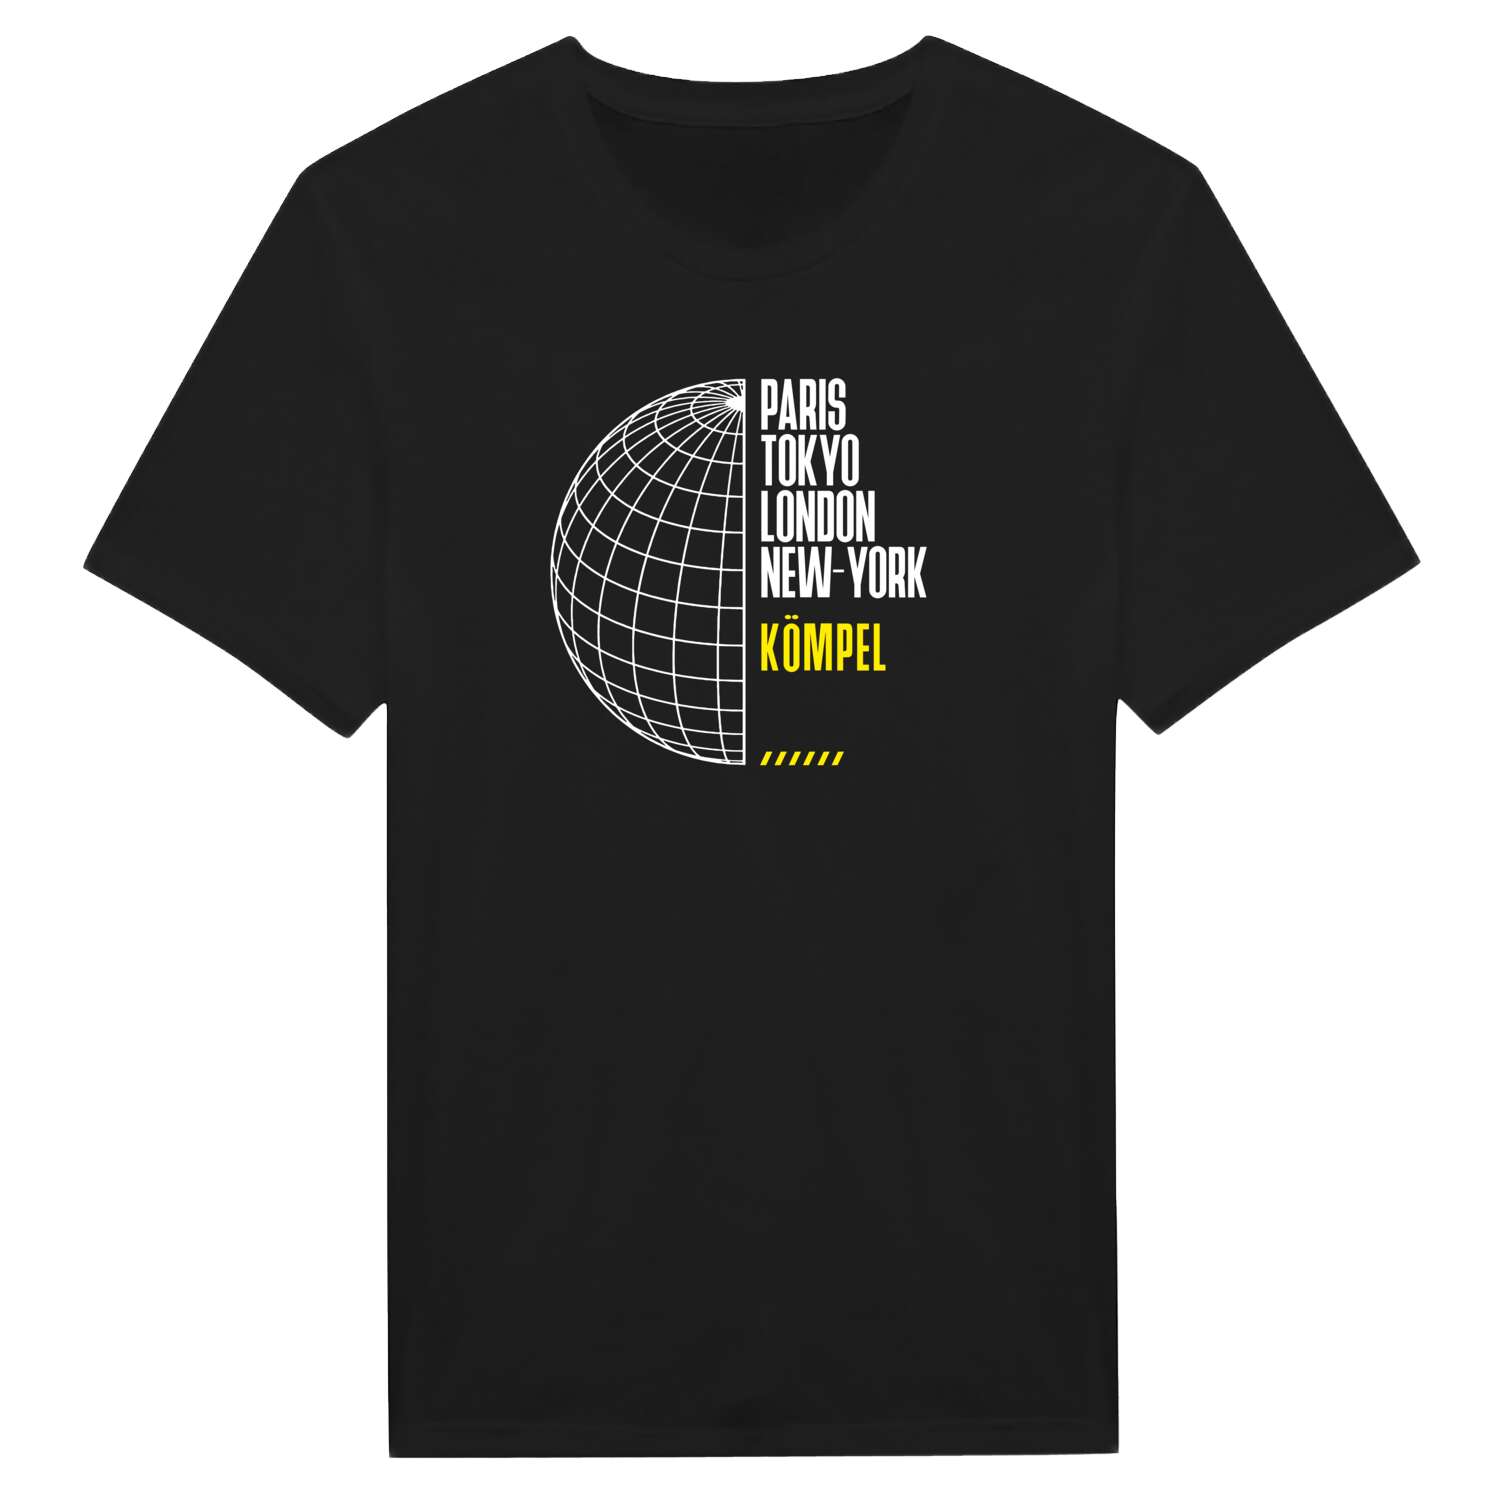 Kömpel T-Shirt »Paris Tokyo London«